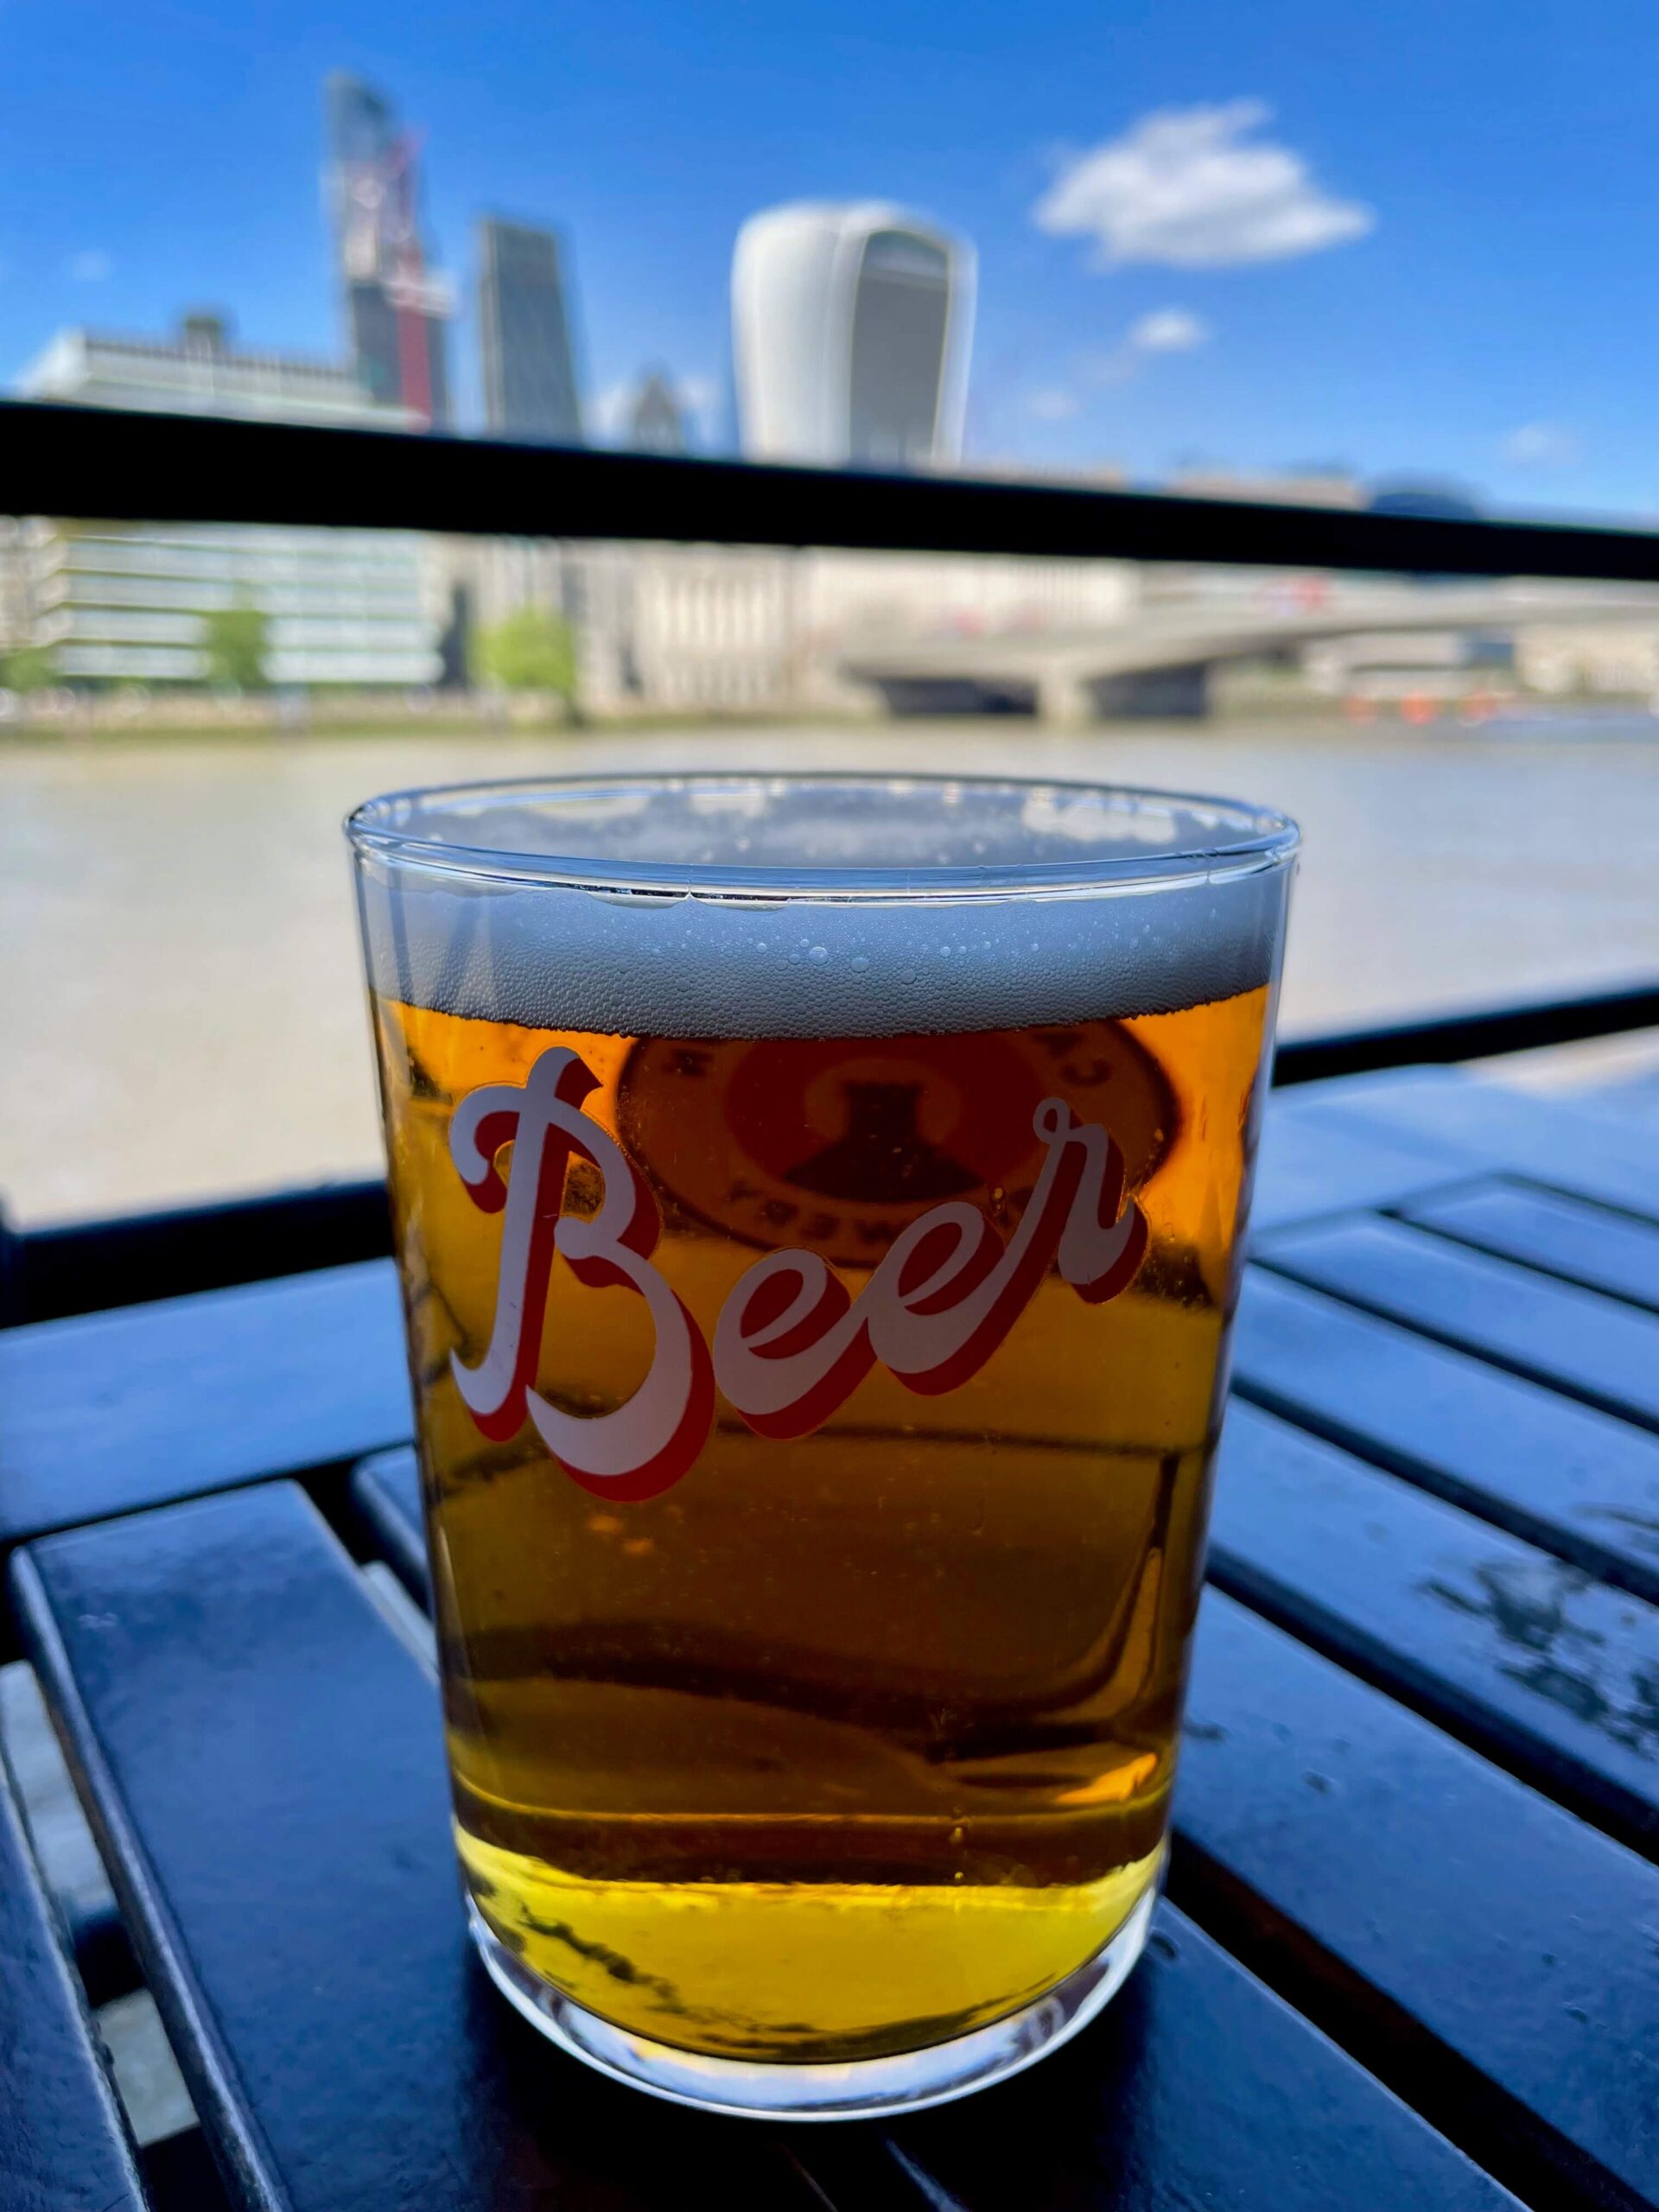 UK, London - beer